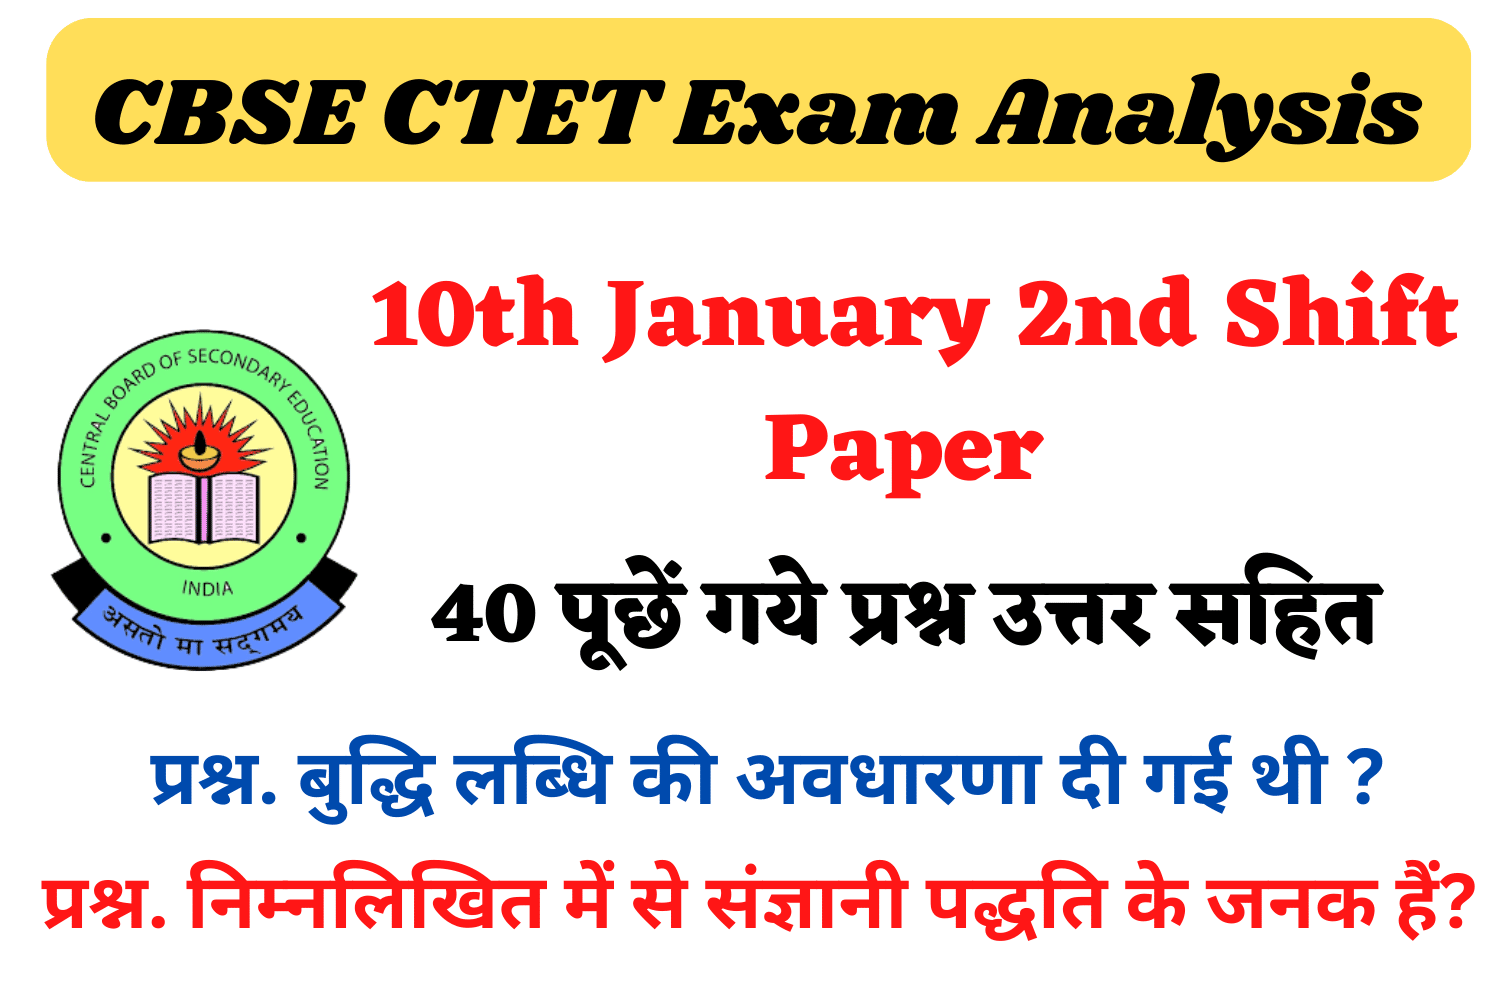 CBSE CTET 10th January 2nd Shift Exam Analysis | सीटेट परीक्षा 10 जनवरी की दूसरी शिफ्ट में पूछे गए प्रश्न और उत्तर